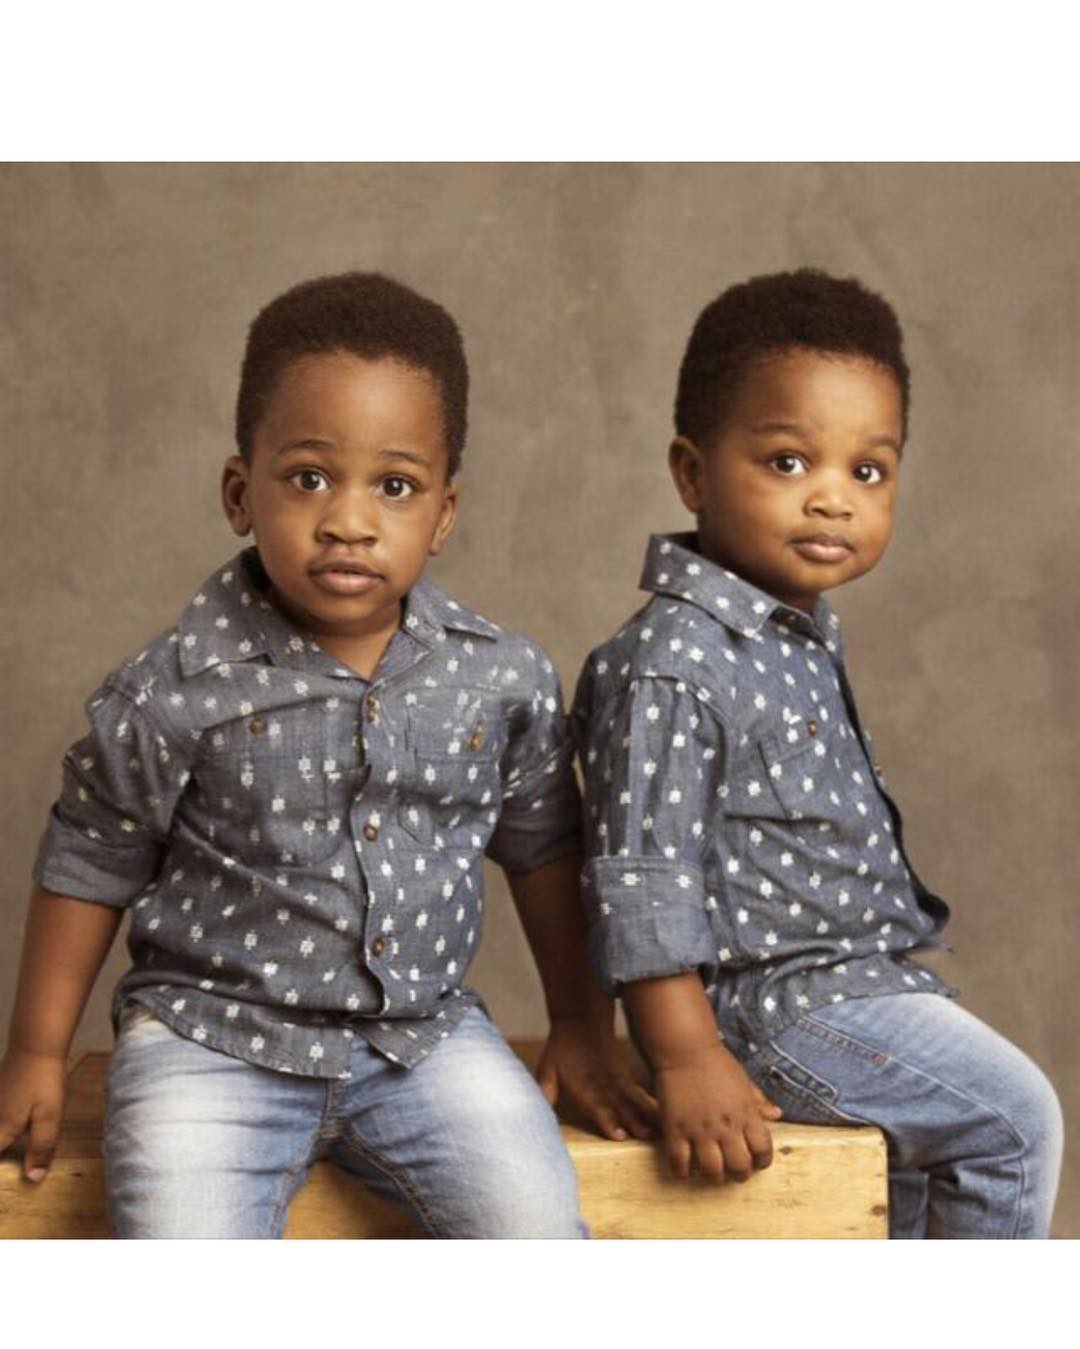 TY Bello Shares Adorable Photos Of Her Twin Boys